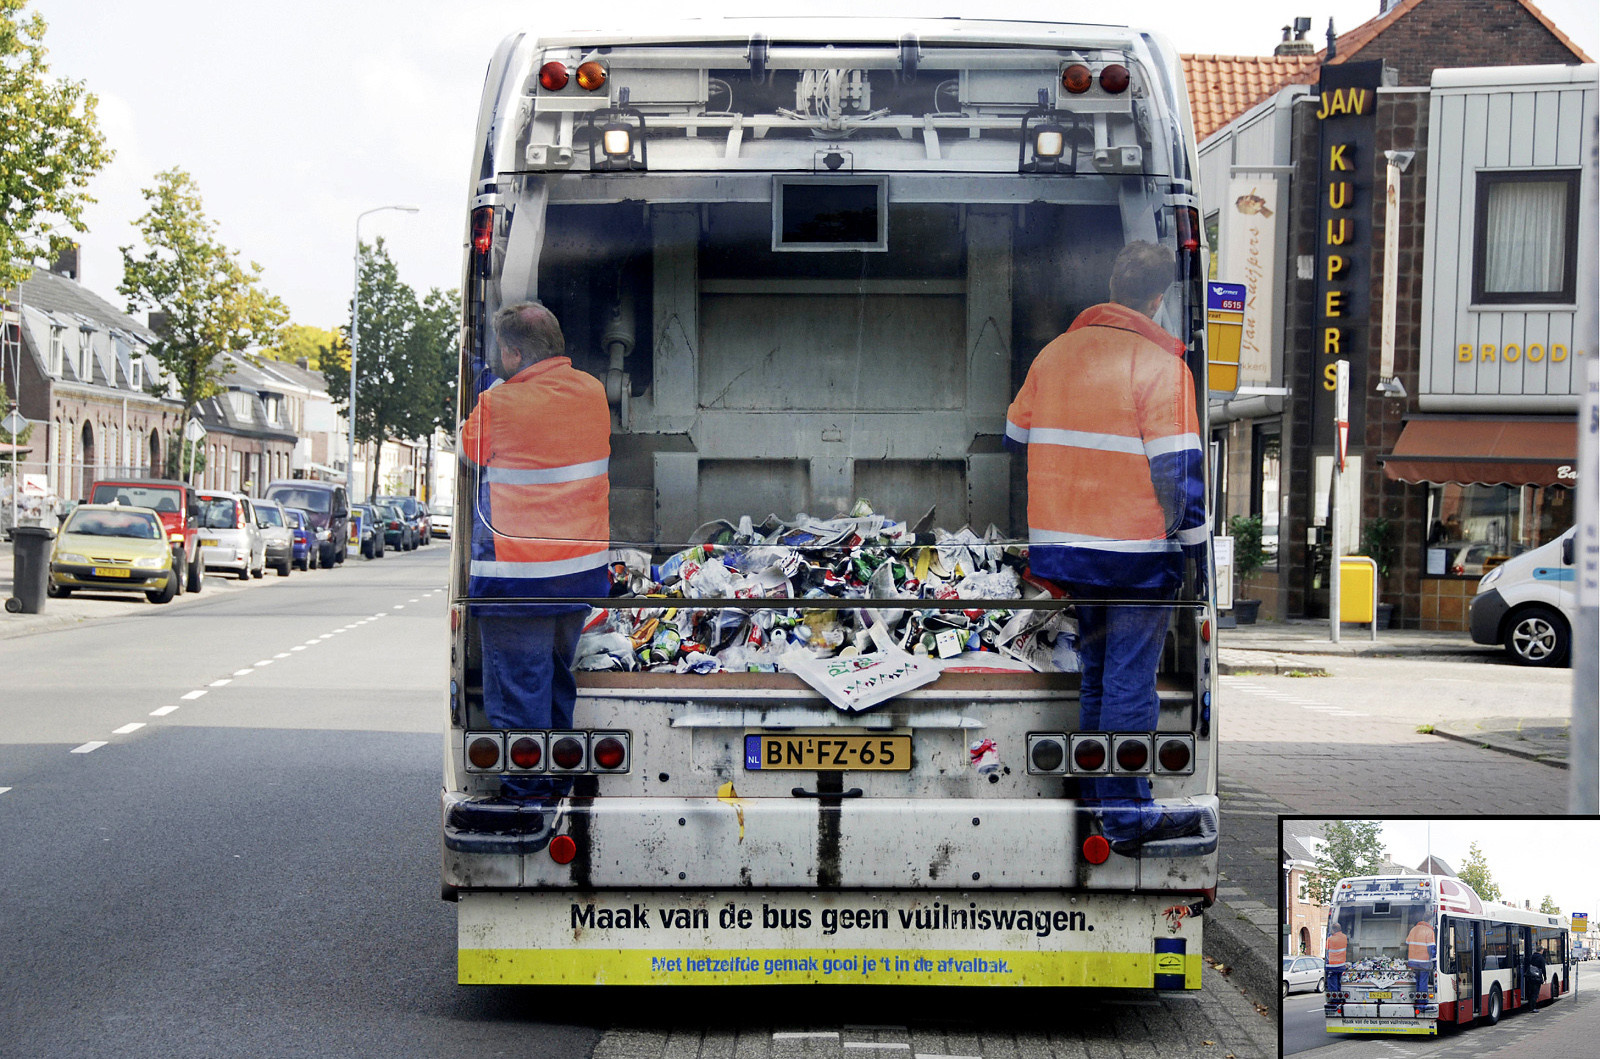 Соціальна реклама проти забруднення міста, Амстердам